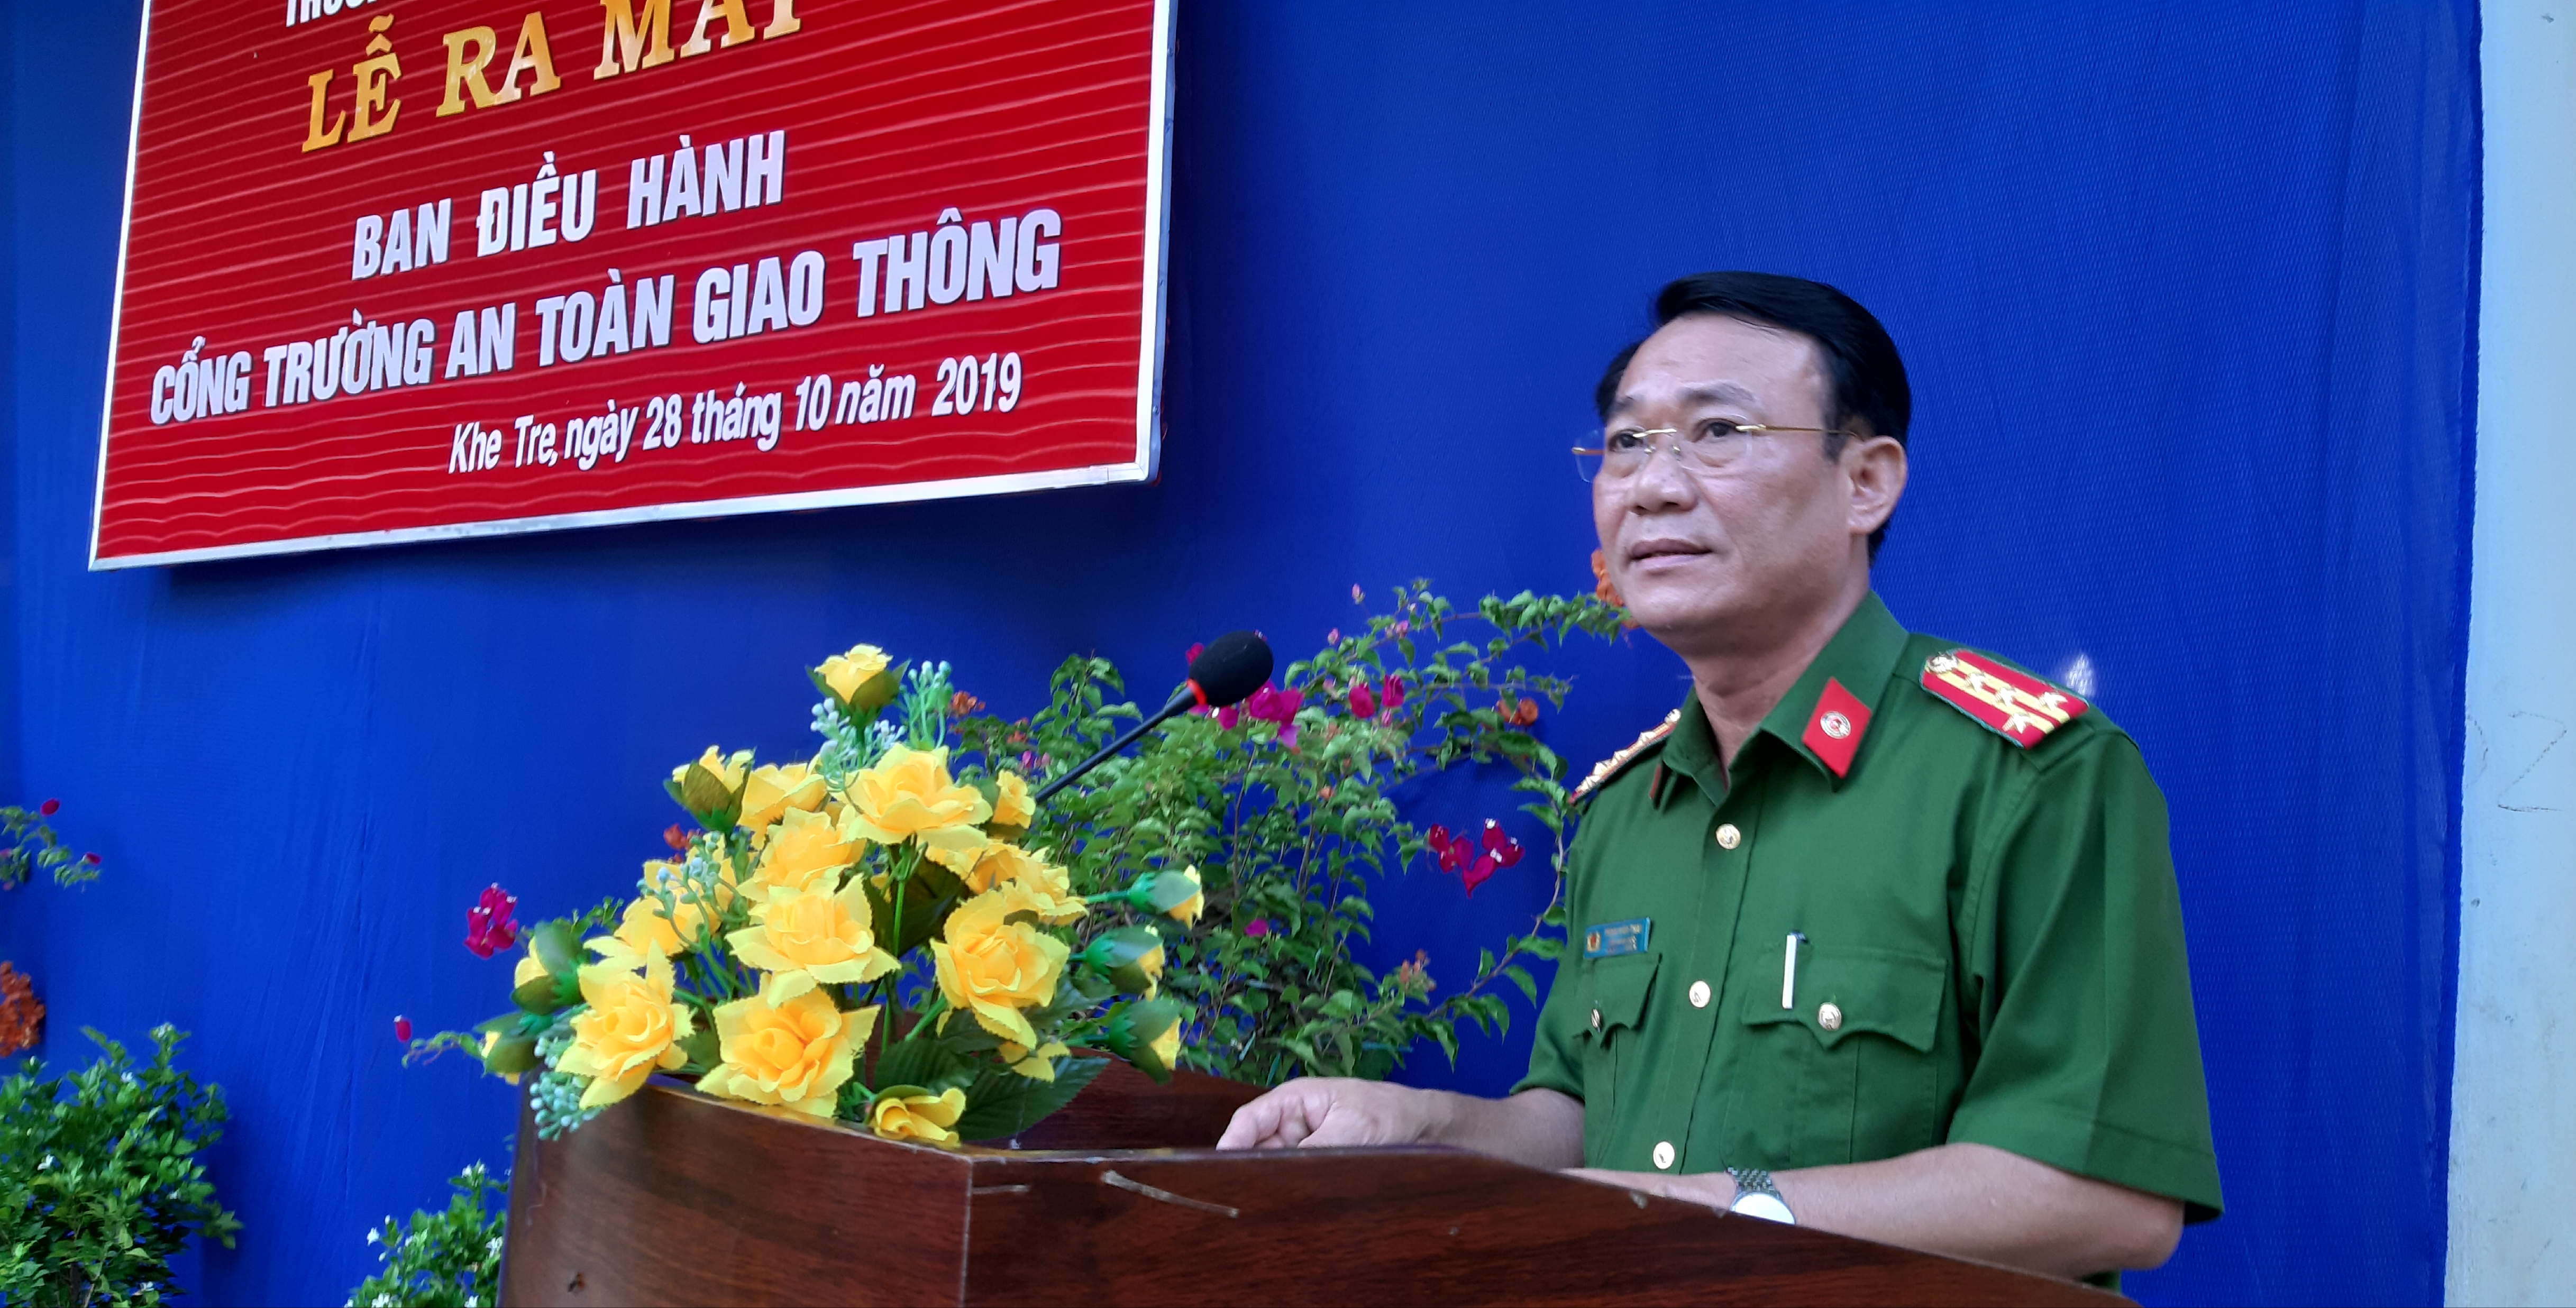 Đại tá Phạm Văn Thái, Phó Giám đốc Công an tỉnh, Phó Ban chỉ đạo 138 tỉnh phát biểu